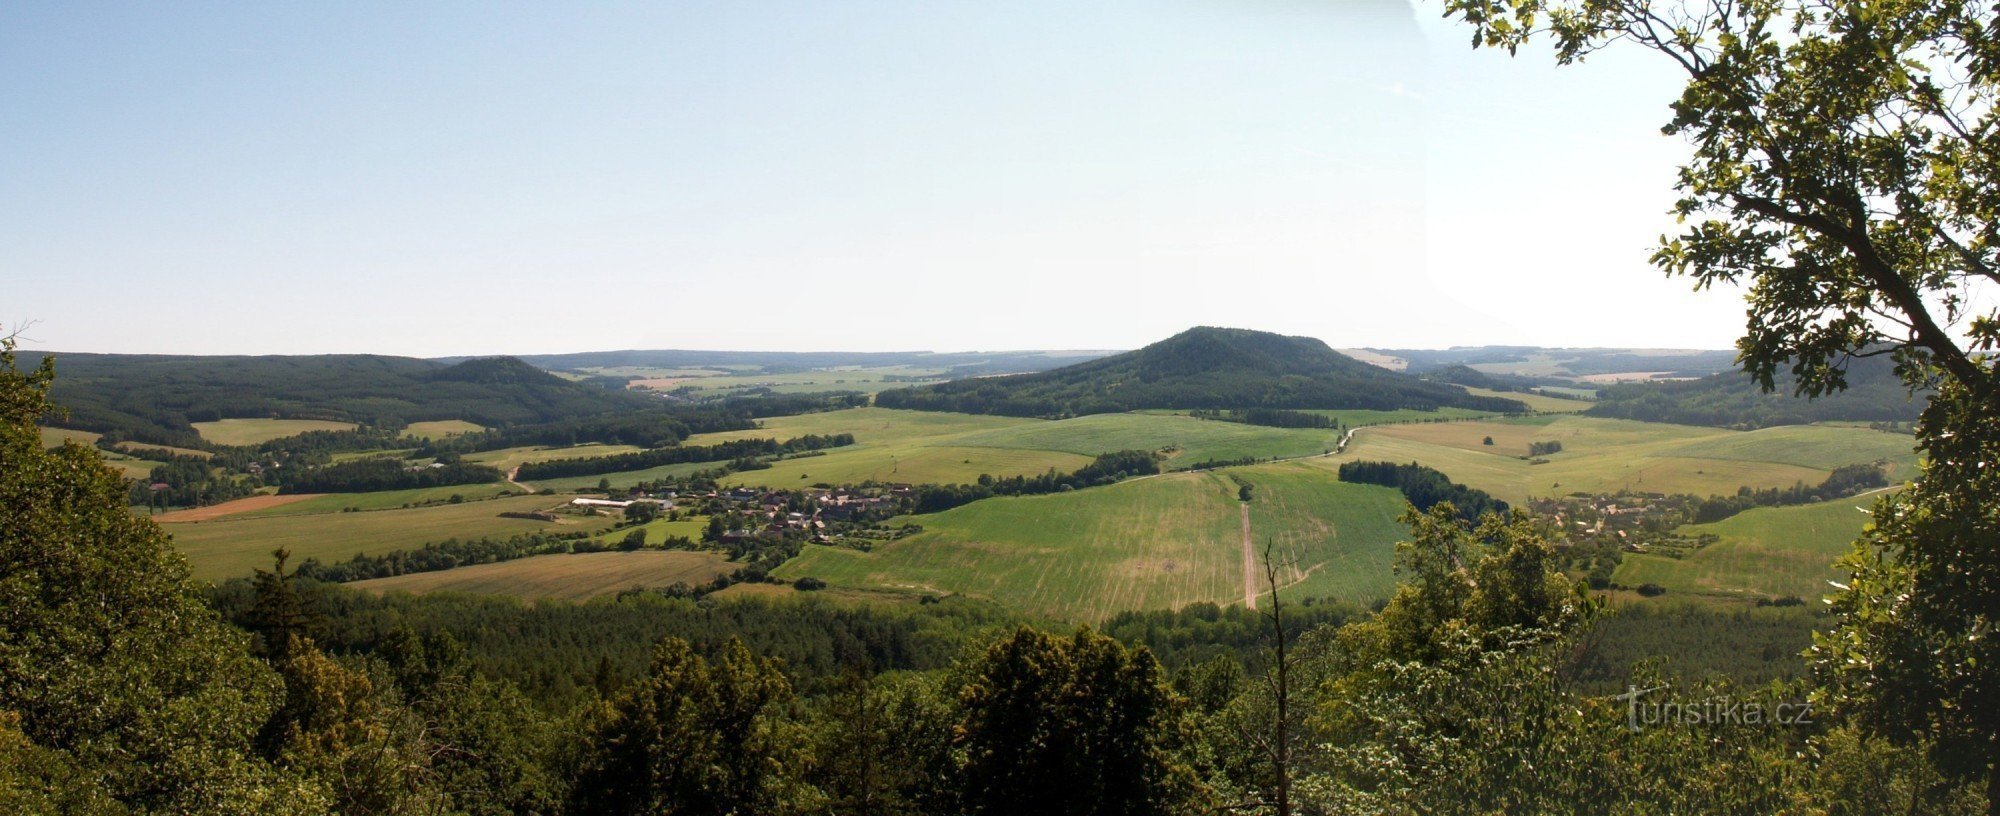 Uitzicht op het landschap van de regio Manětín vanaf het uitkijkpunt